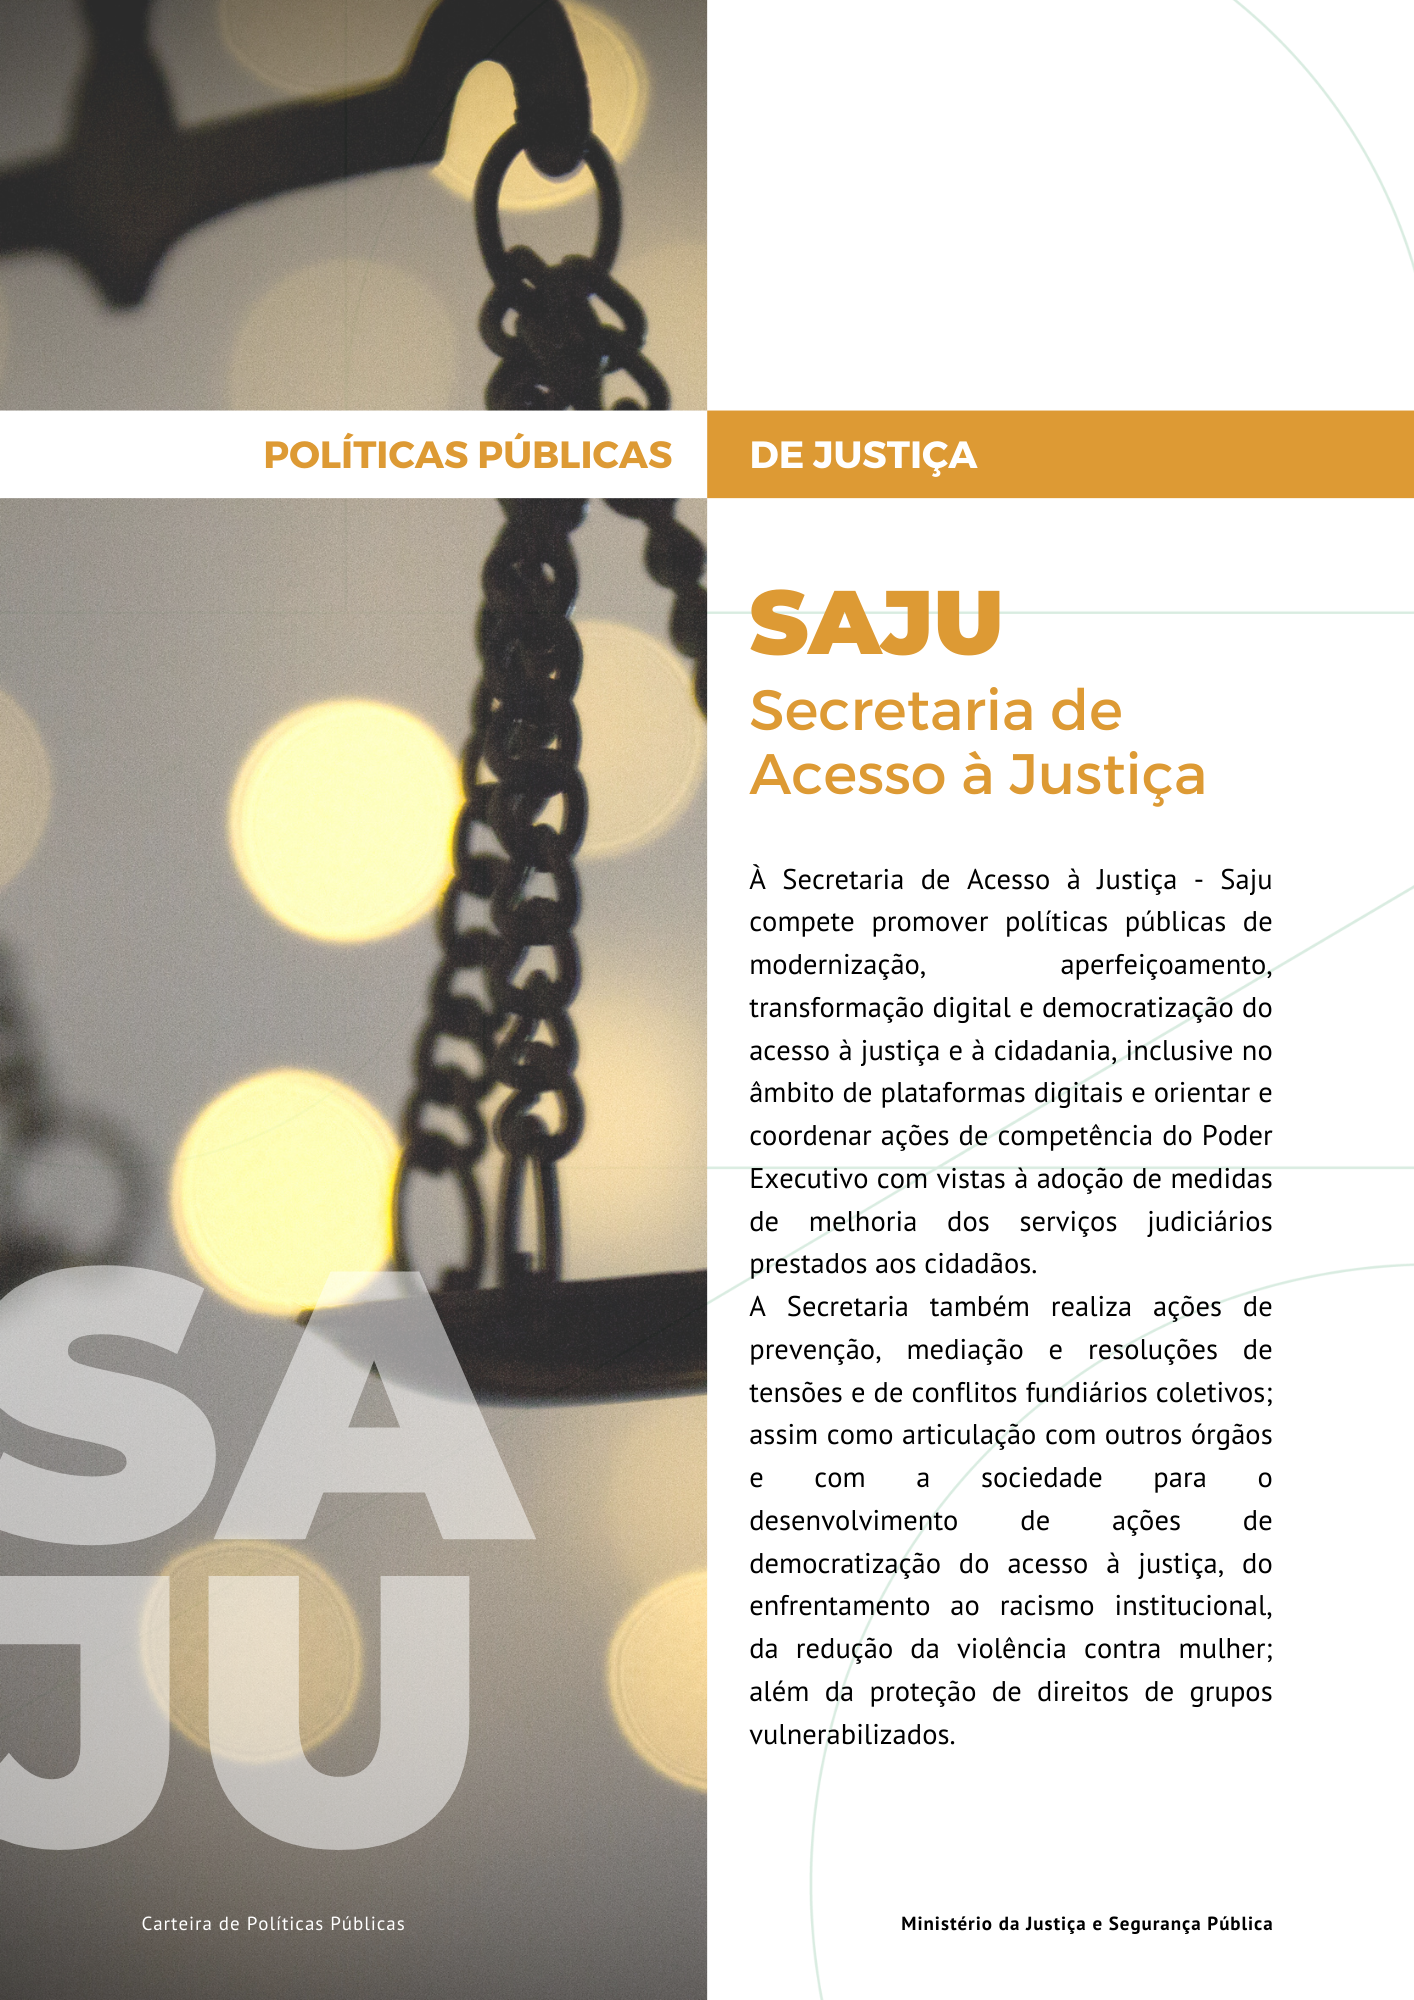 Link para acesso as políticas públicas da Secretaria de Acesso a Justiça - SAJU